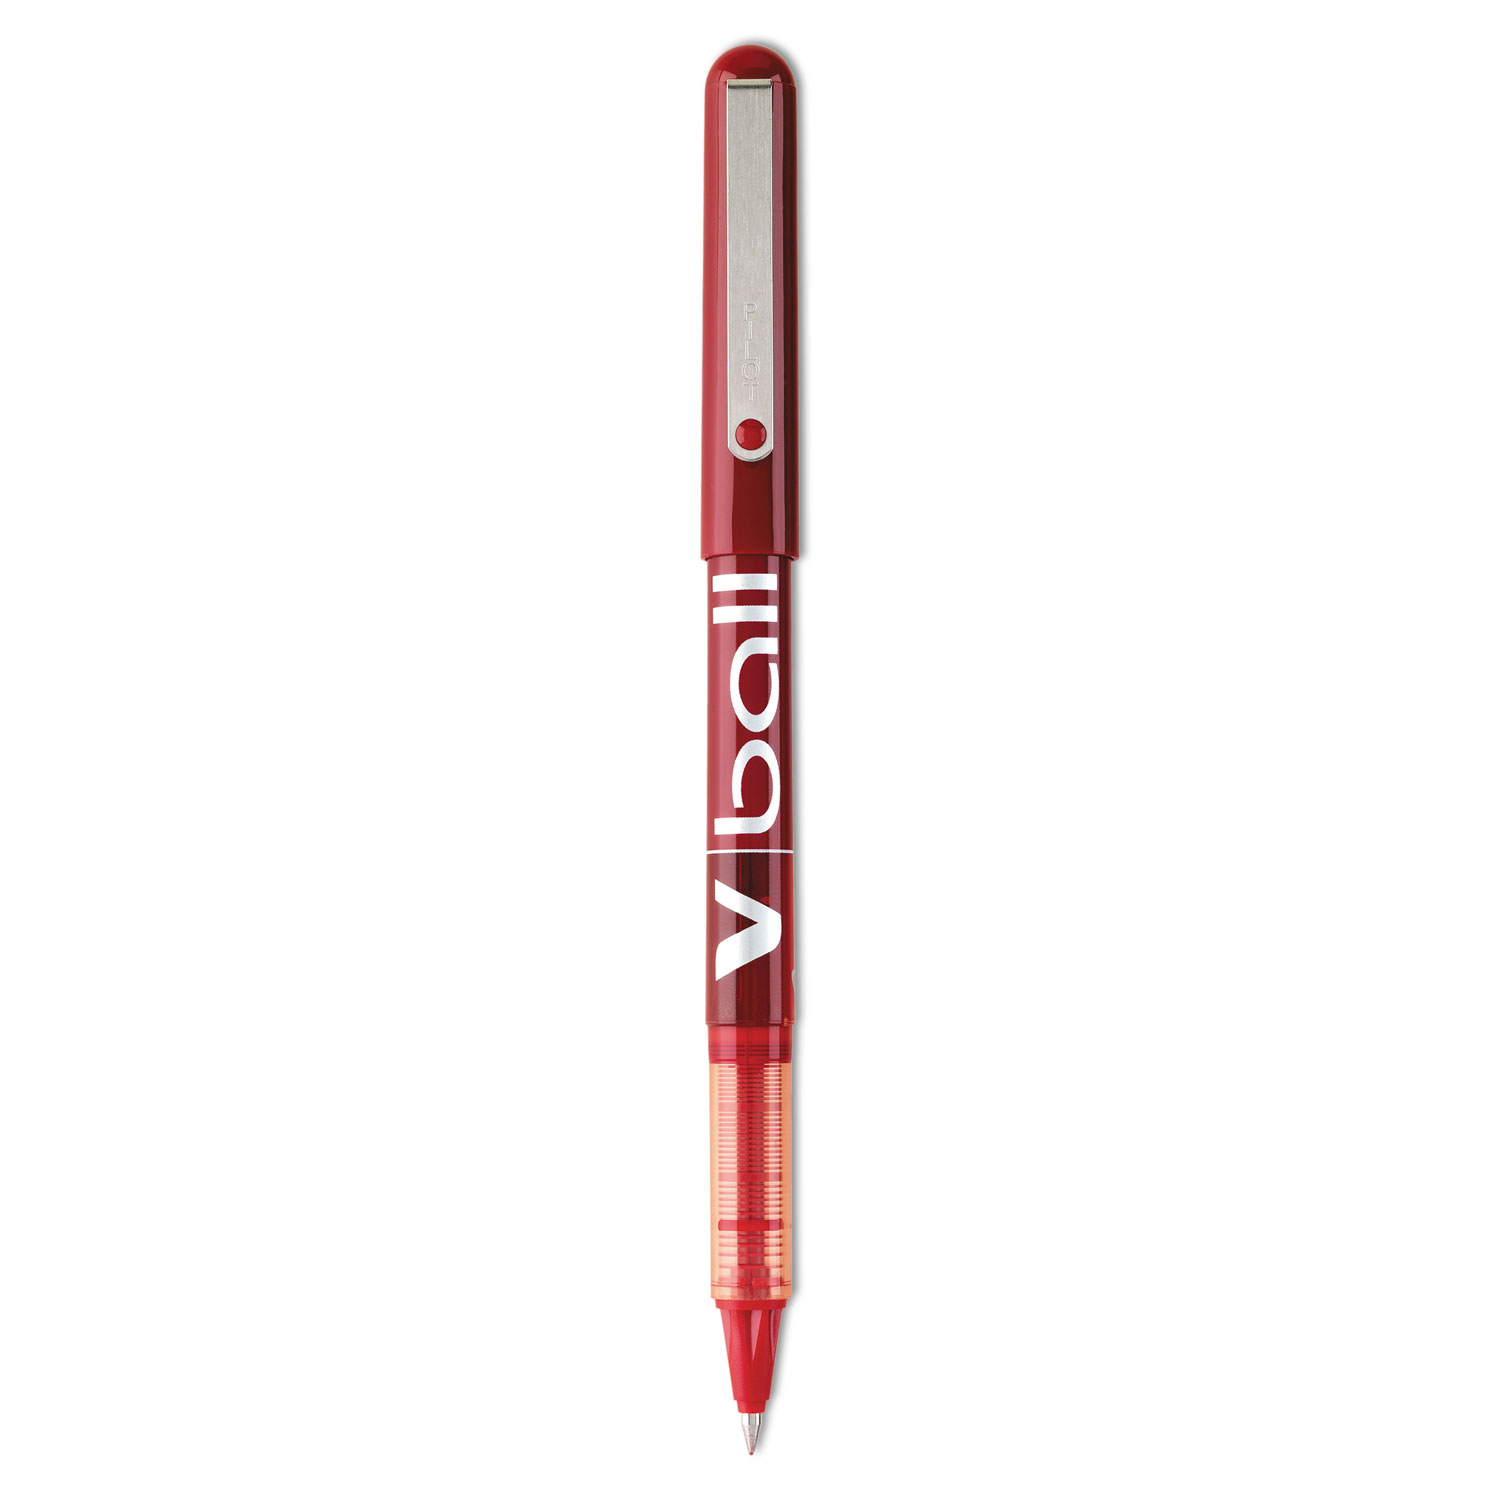  Pilot 35202 VBall Liquid Ink Stick Roller Ball Pen, 0.5mm, Red Ink/Barrel, Dozen (PIL35202) 